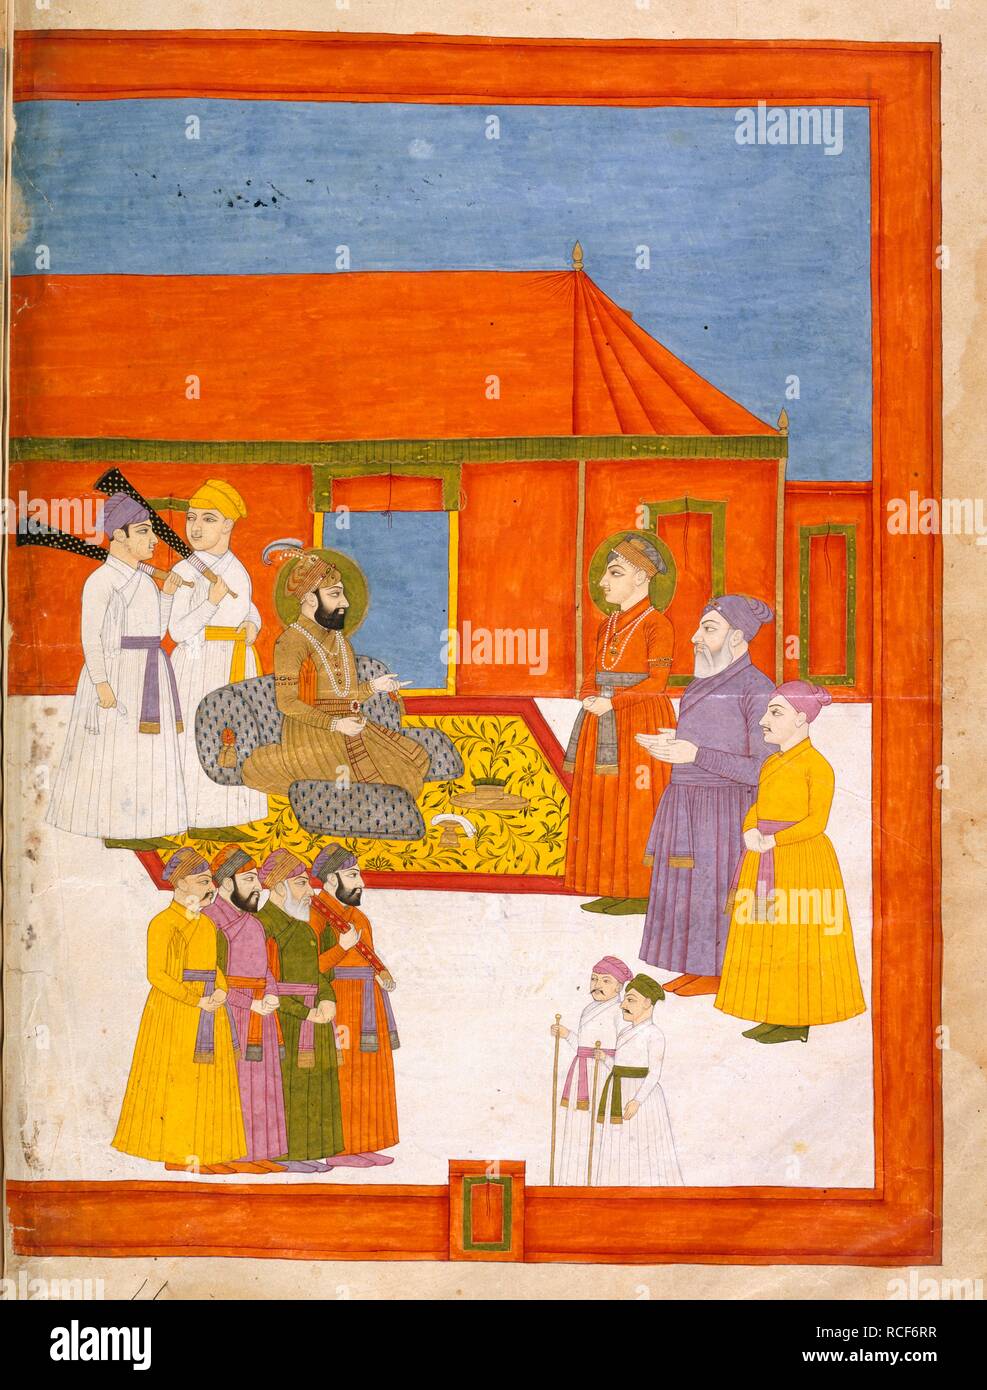 Jahandar Shah donne à l'auditoire. Les travaux liés à l'historique des règnes Bahadur. Le Pendjab, fin du 18e siècle. Abd al-Samad Khan reçu par Jahandar Shah (1712-1713). Une peinture à partir d'un travail historique sur les règnes de Bahadur Shah Jahandar Shah et j. Image prise à partir de l'historique des travaux relatifs aux les règnes de Bahadur Shah Jahandar Shah et j. Publié à l'origine/produits dans le Pendjab, fin du 18e siècle. . Source : Ou. 3610, f.11v. Langue : en panjabi. Banque D'Images